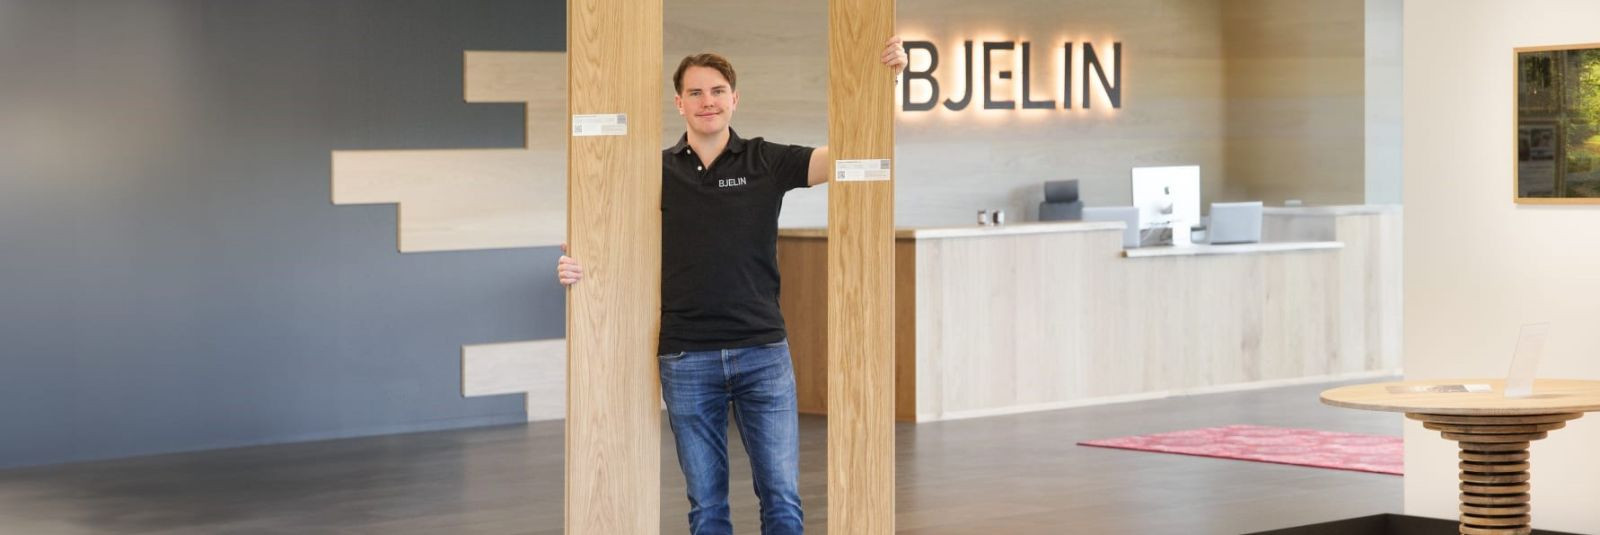 Klientide soovil toob Bjelin Euroopa põrandakatteturule kõvendatud puitpõrandate L-mõõdus lauad. Uute skandinaaviapäraste põrandate tootmisel kasutatakse uusima